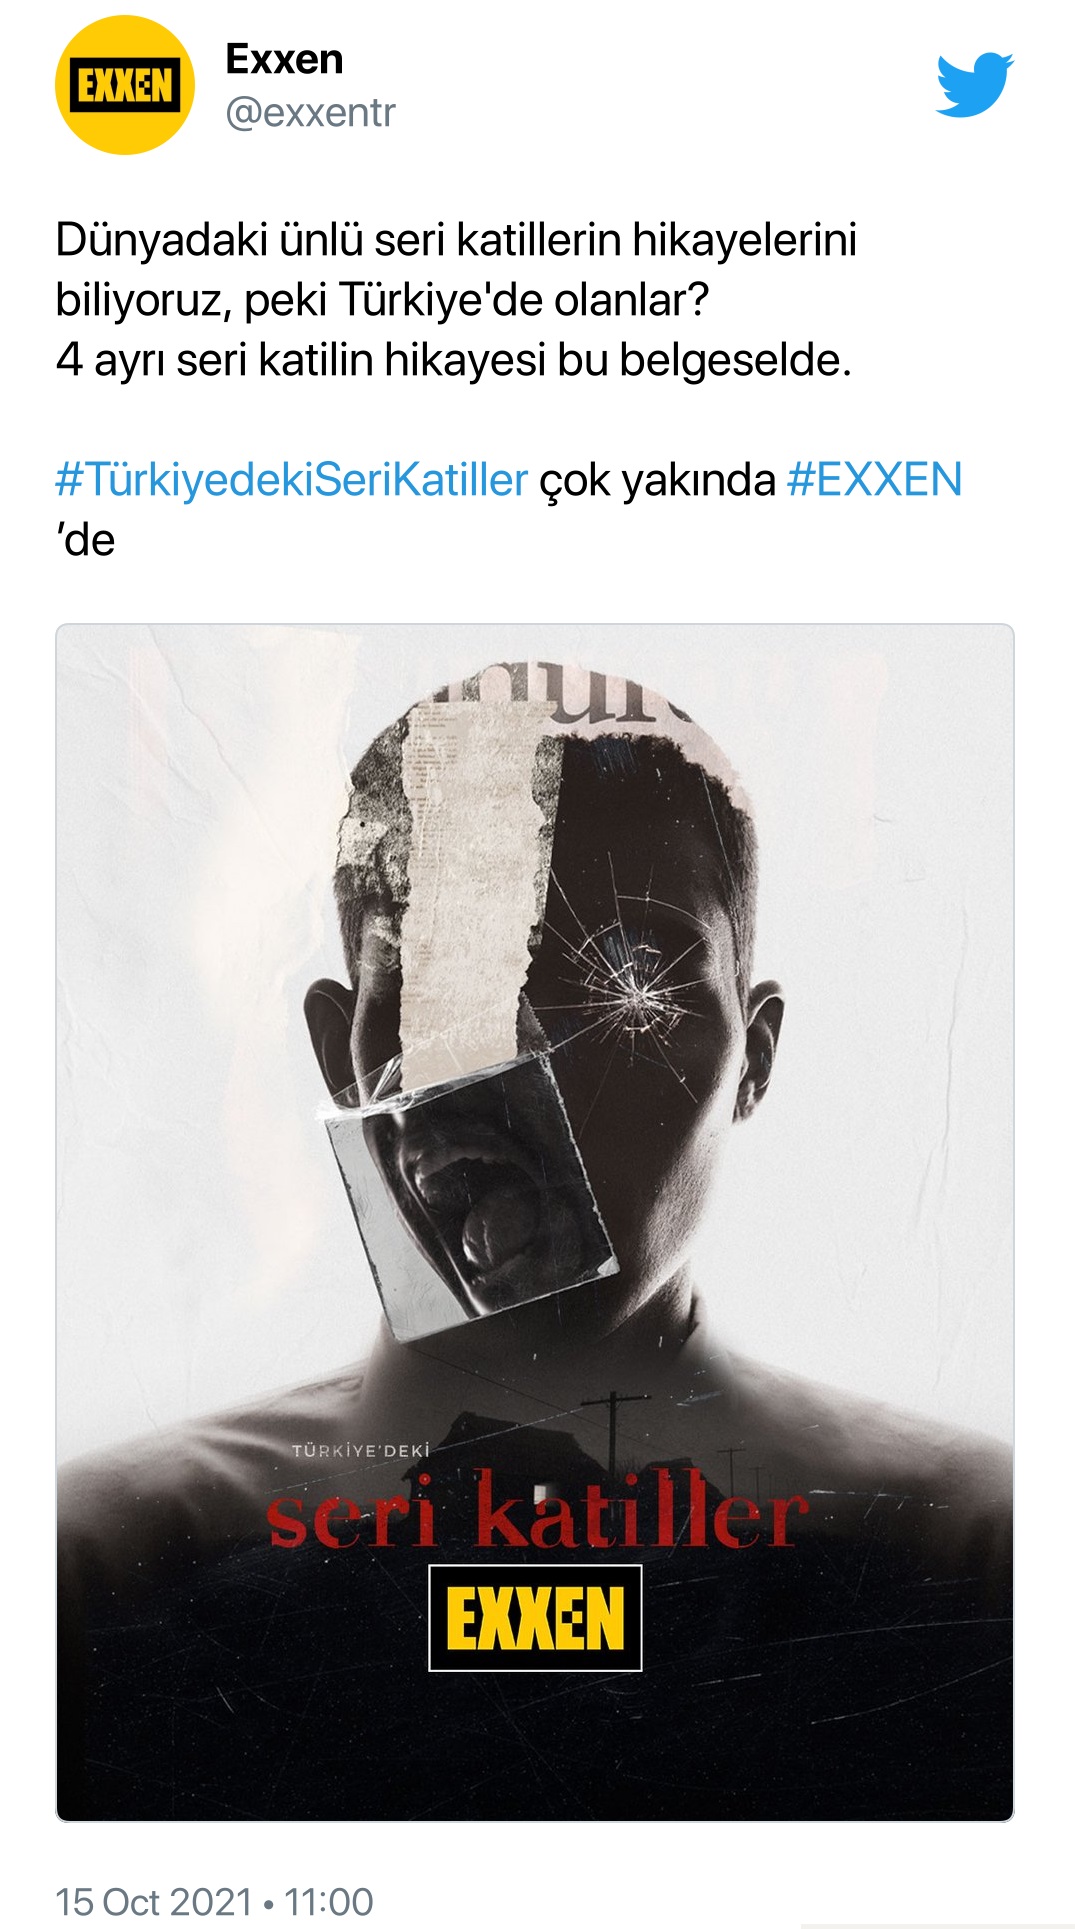 Exxen Yeni Belgeselini Duyurdu: Trkiye'deki Seri Katiller